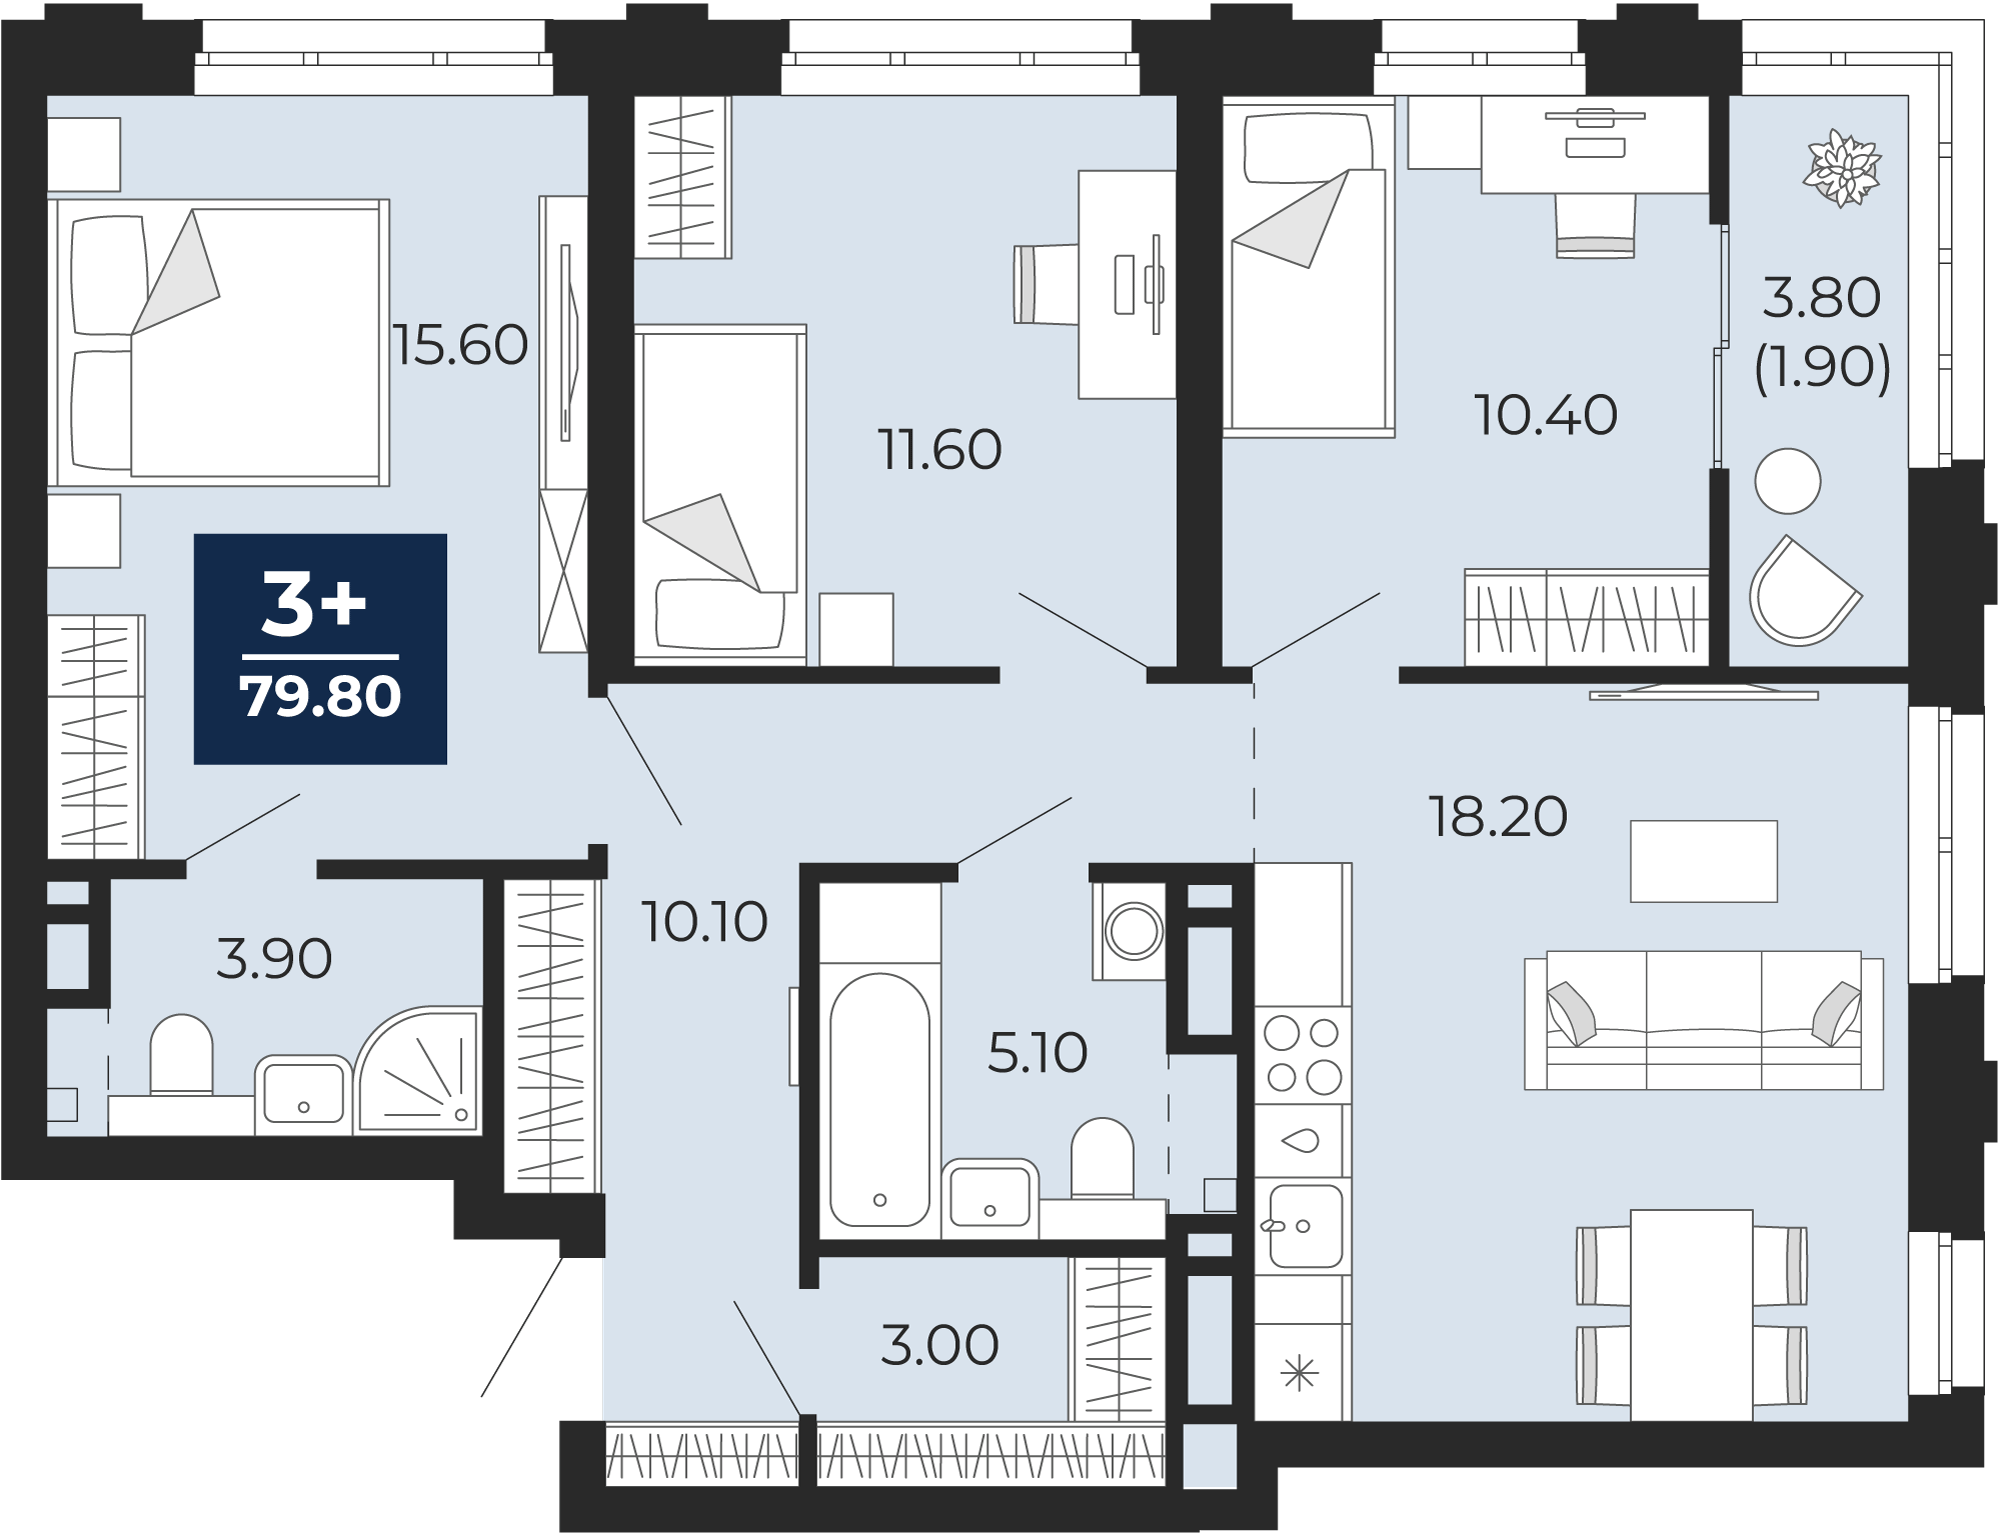 Квартира № 277, 3-комнатная, 79.8 кв. м, 5 этаж